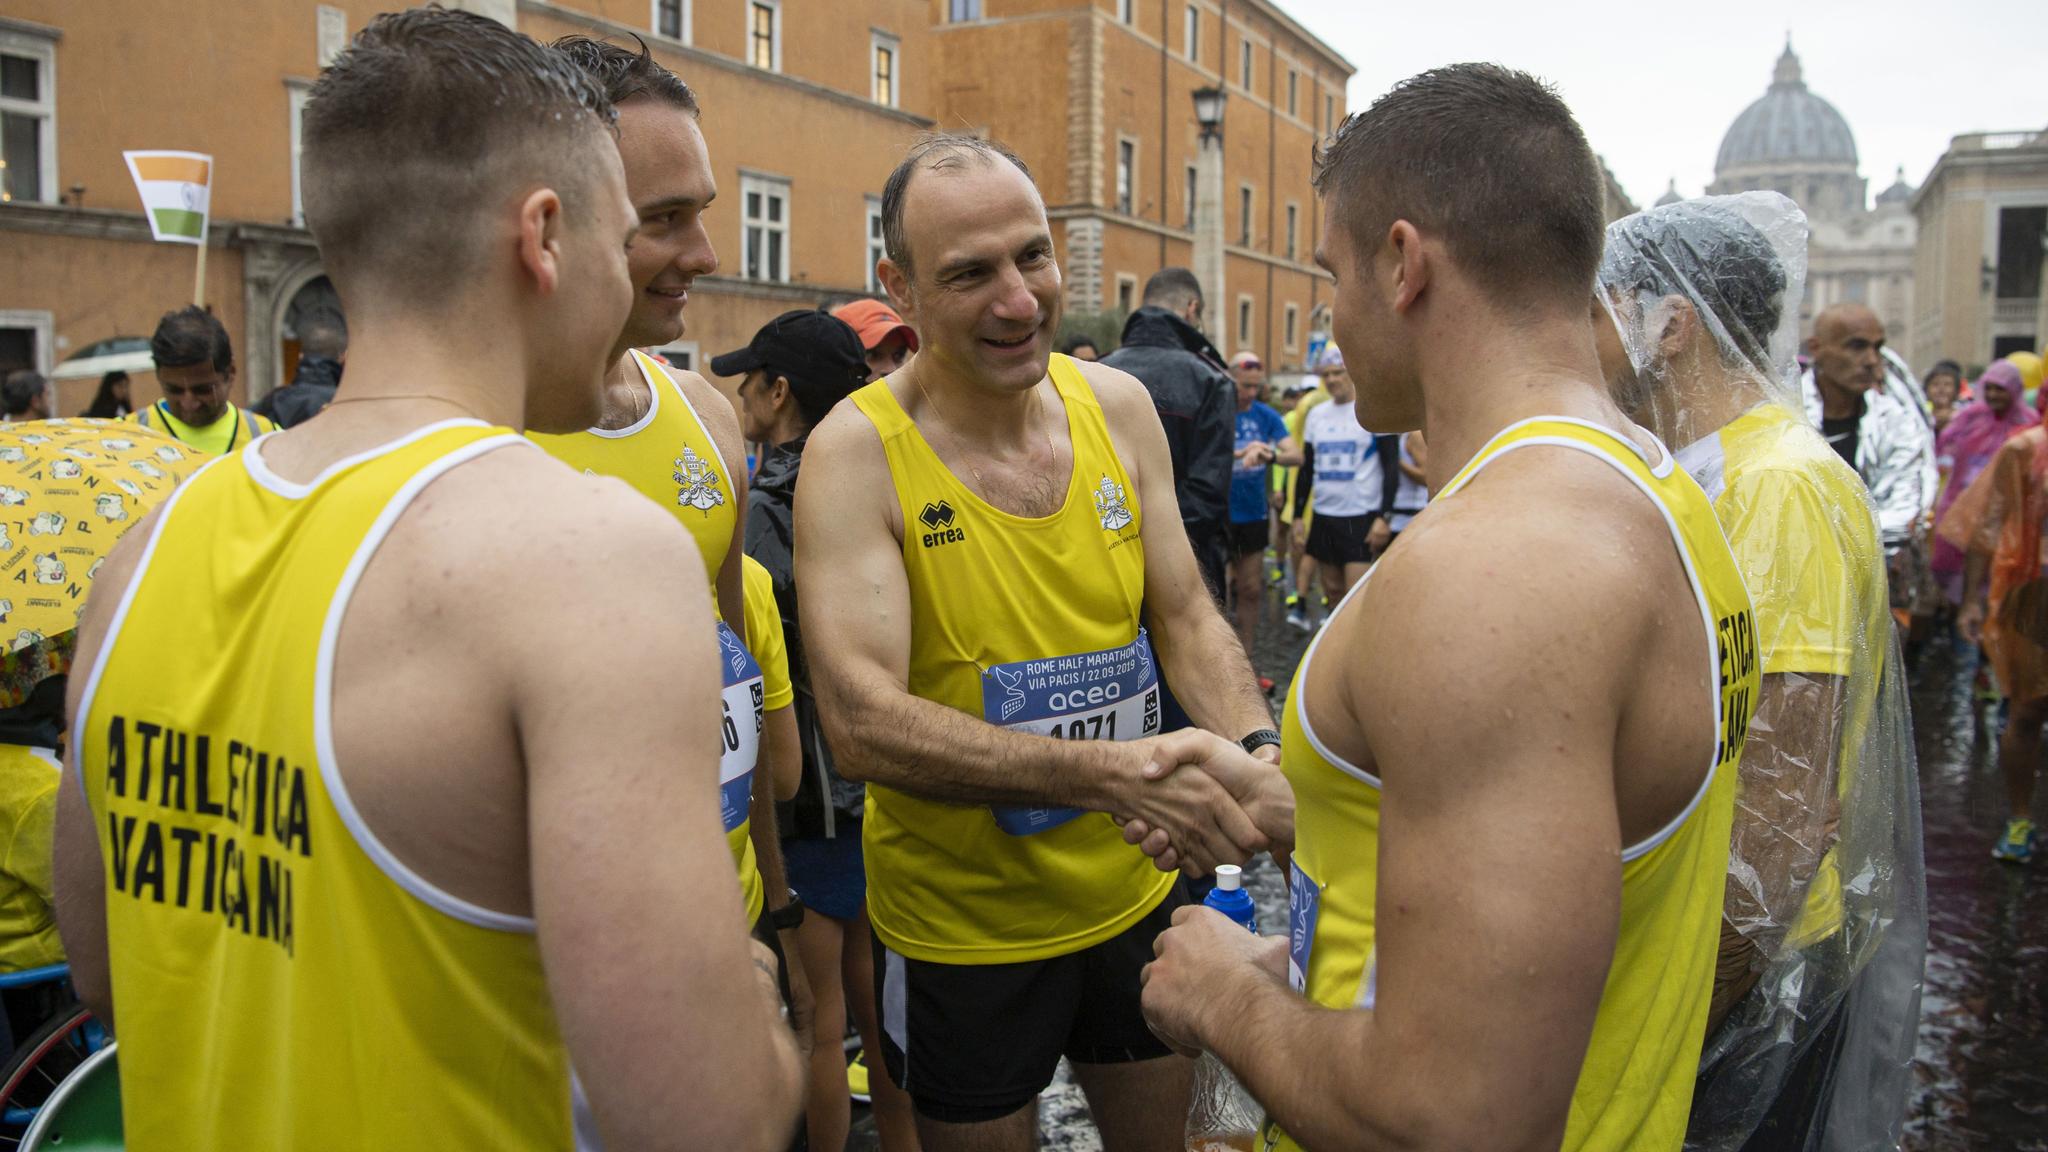 Membros da Athletica Vaticana na meia-maratona de Roma &#8220;Via Pacis&#8221;, em 2019.